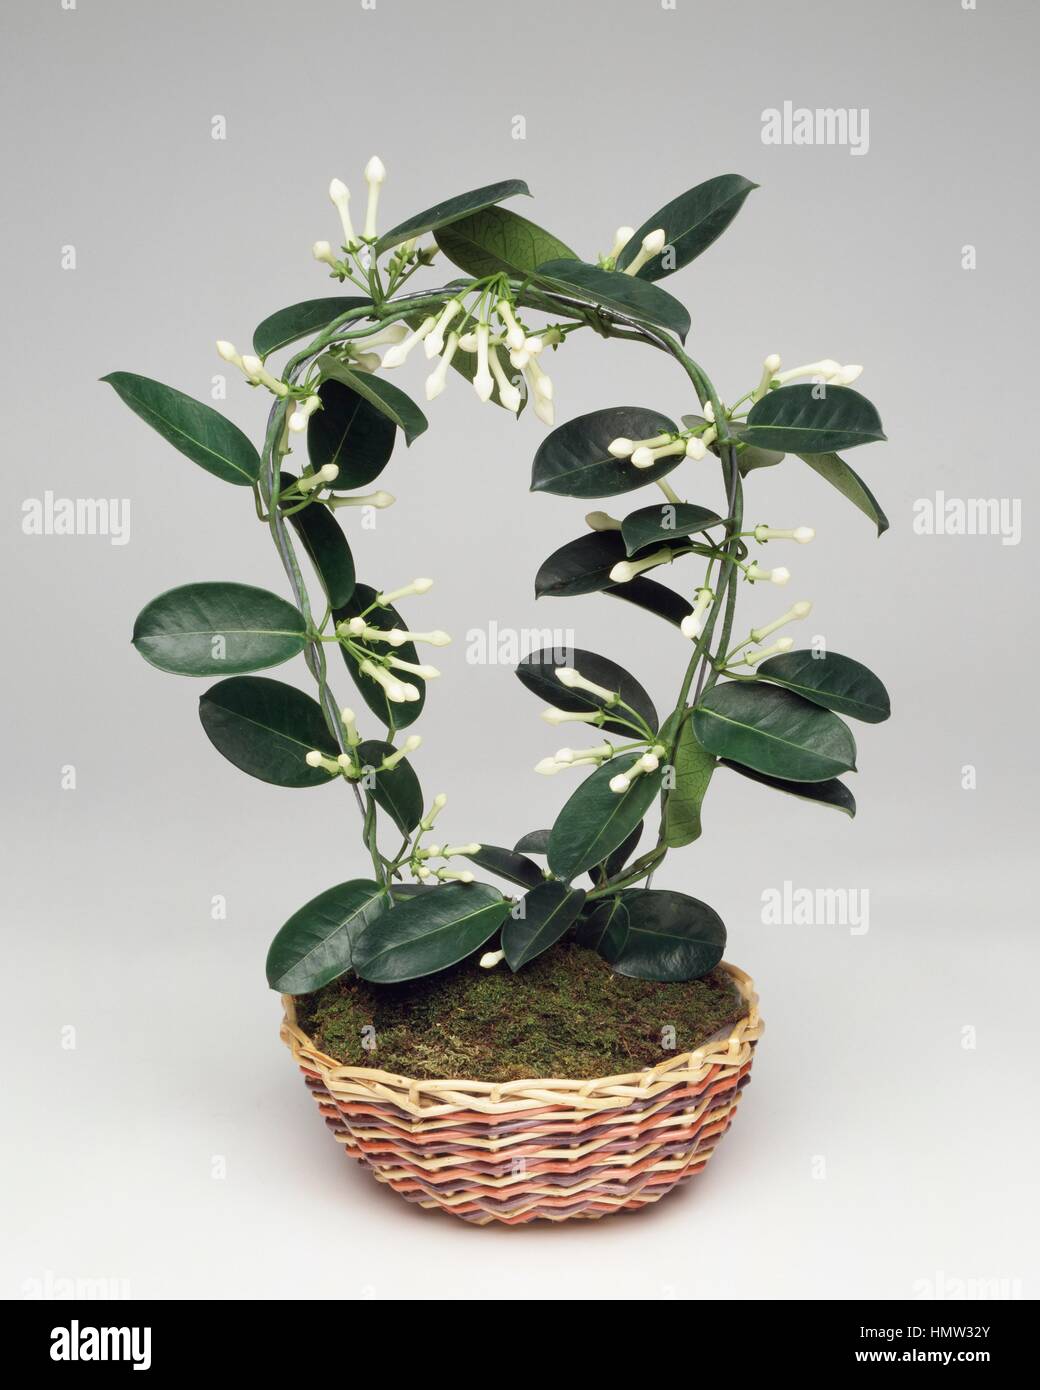 Madagascar Jasmine (Stephanotis floribunda), Apocynaceae. Stock Photo